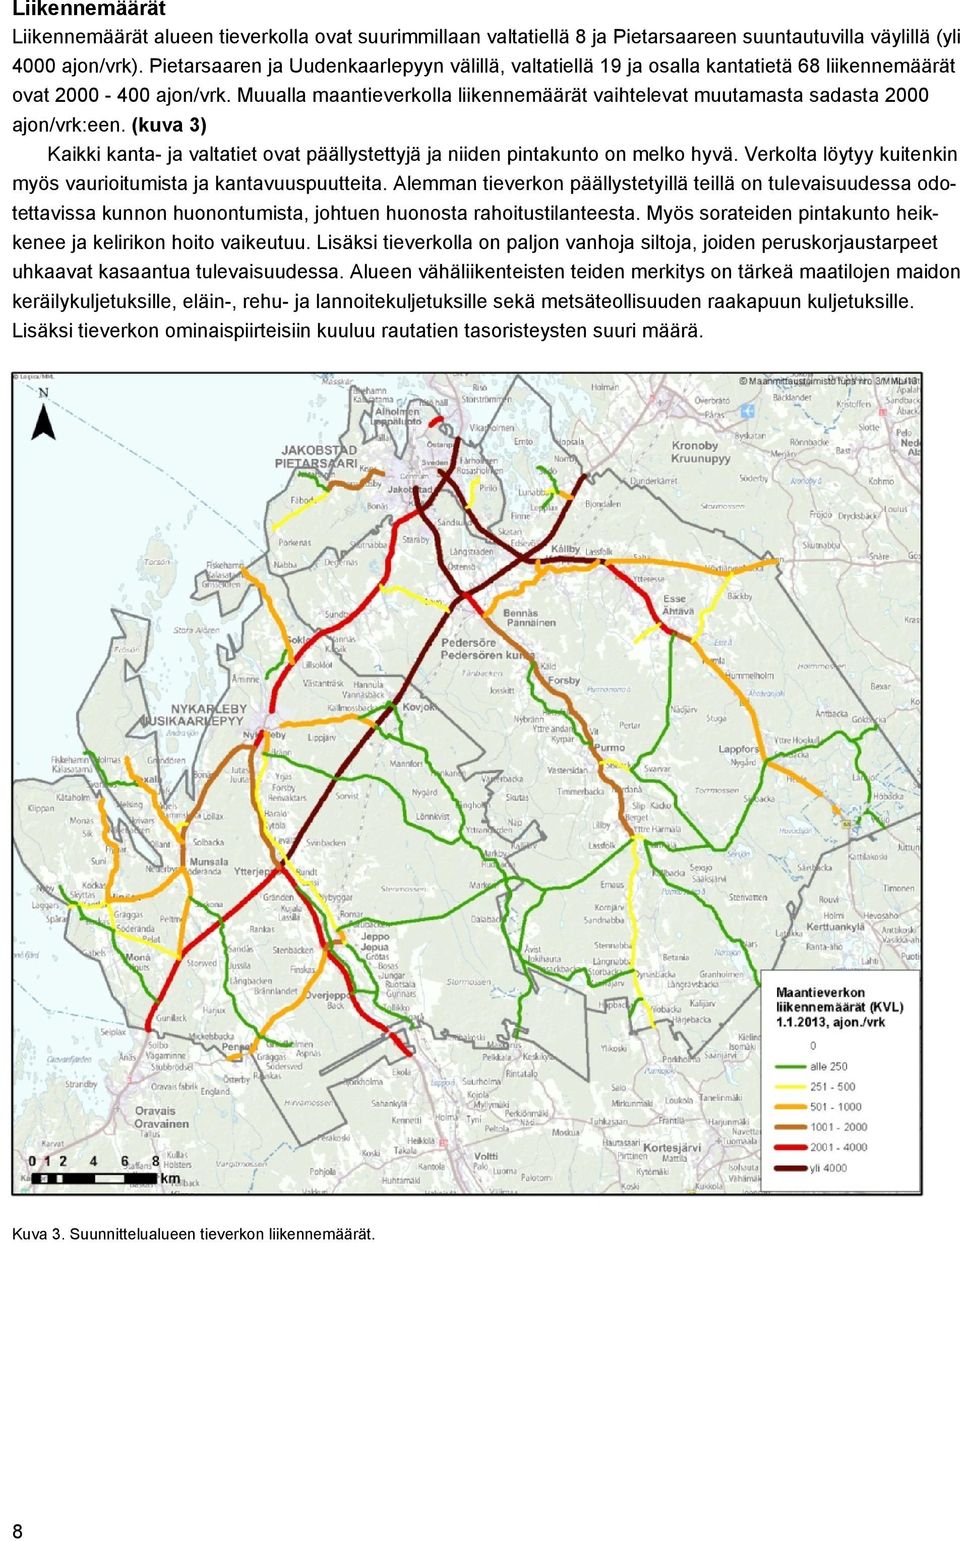 Muualla maantieverkolla liikennemäärät vaihtelevat muutamasta sadasta 2000 ajon/vrk:een. (kuva 3) Kaikki kanta- ja valtatiet ovat päällystettyjä ja niiden pintakunto on melko hyvä.